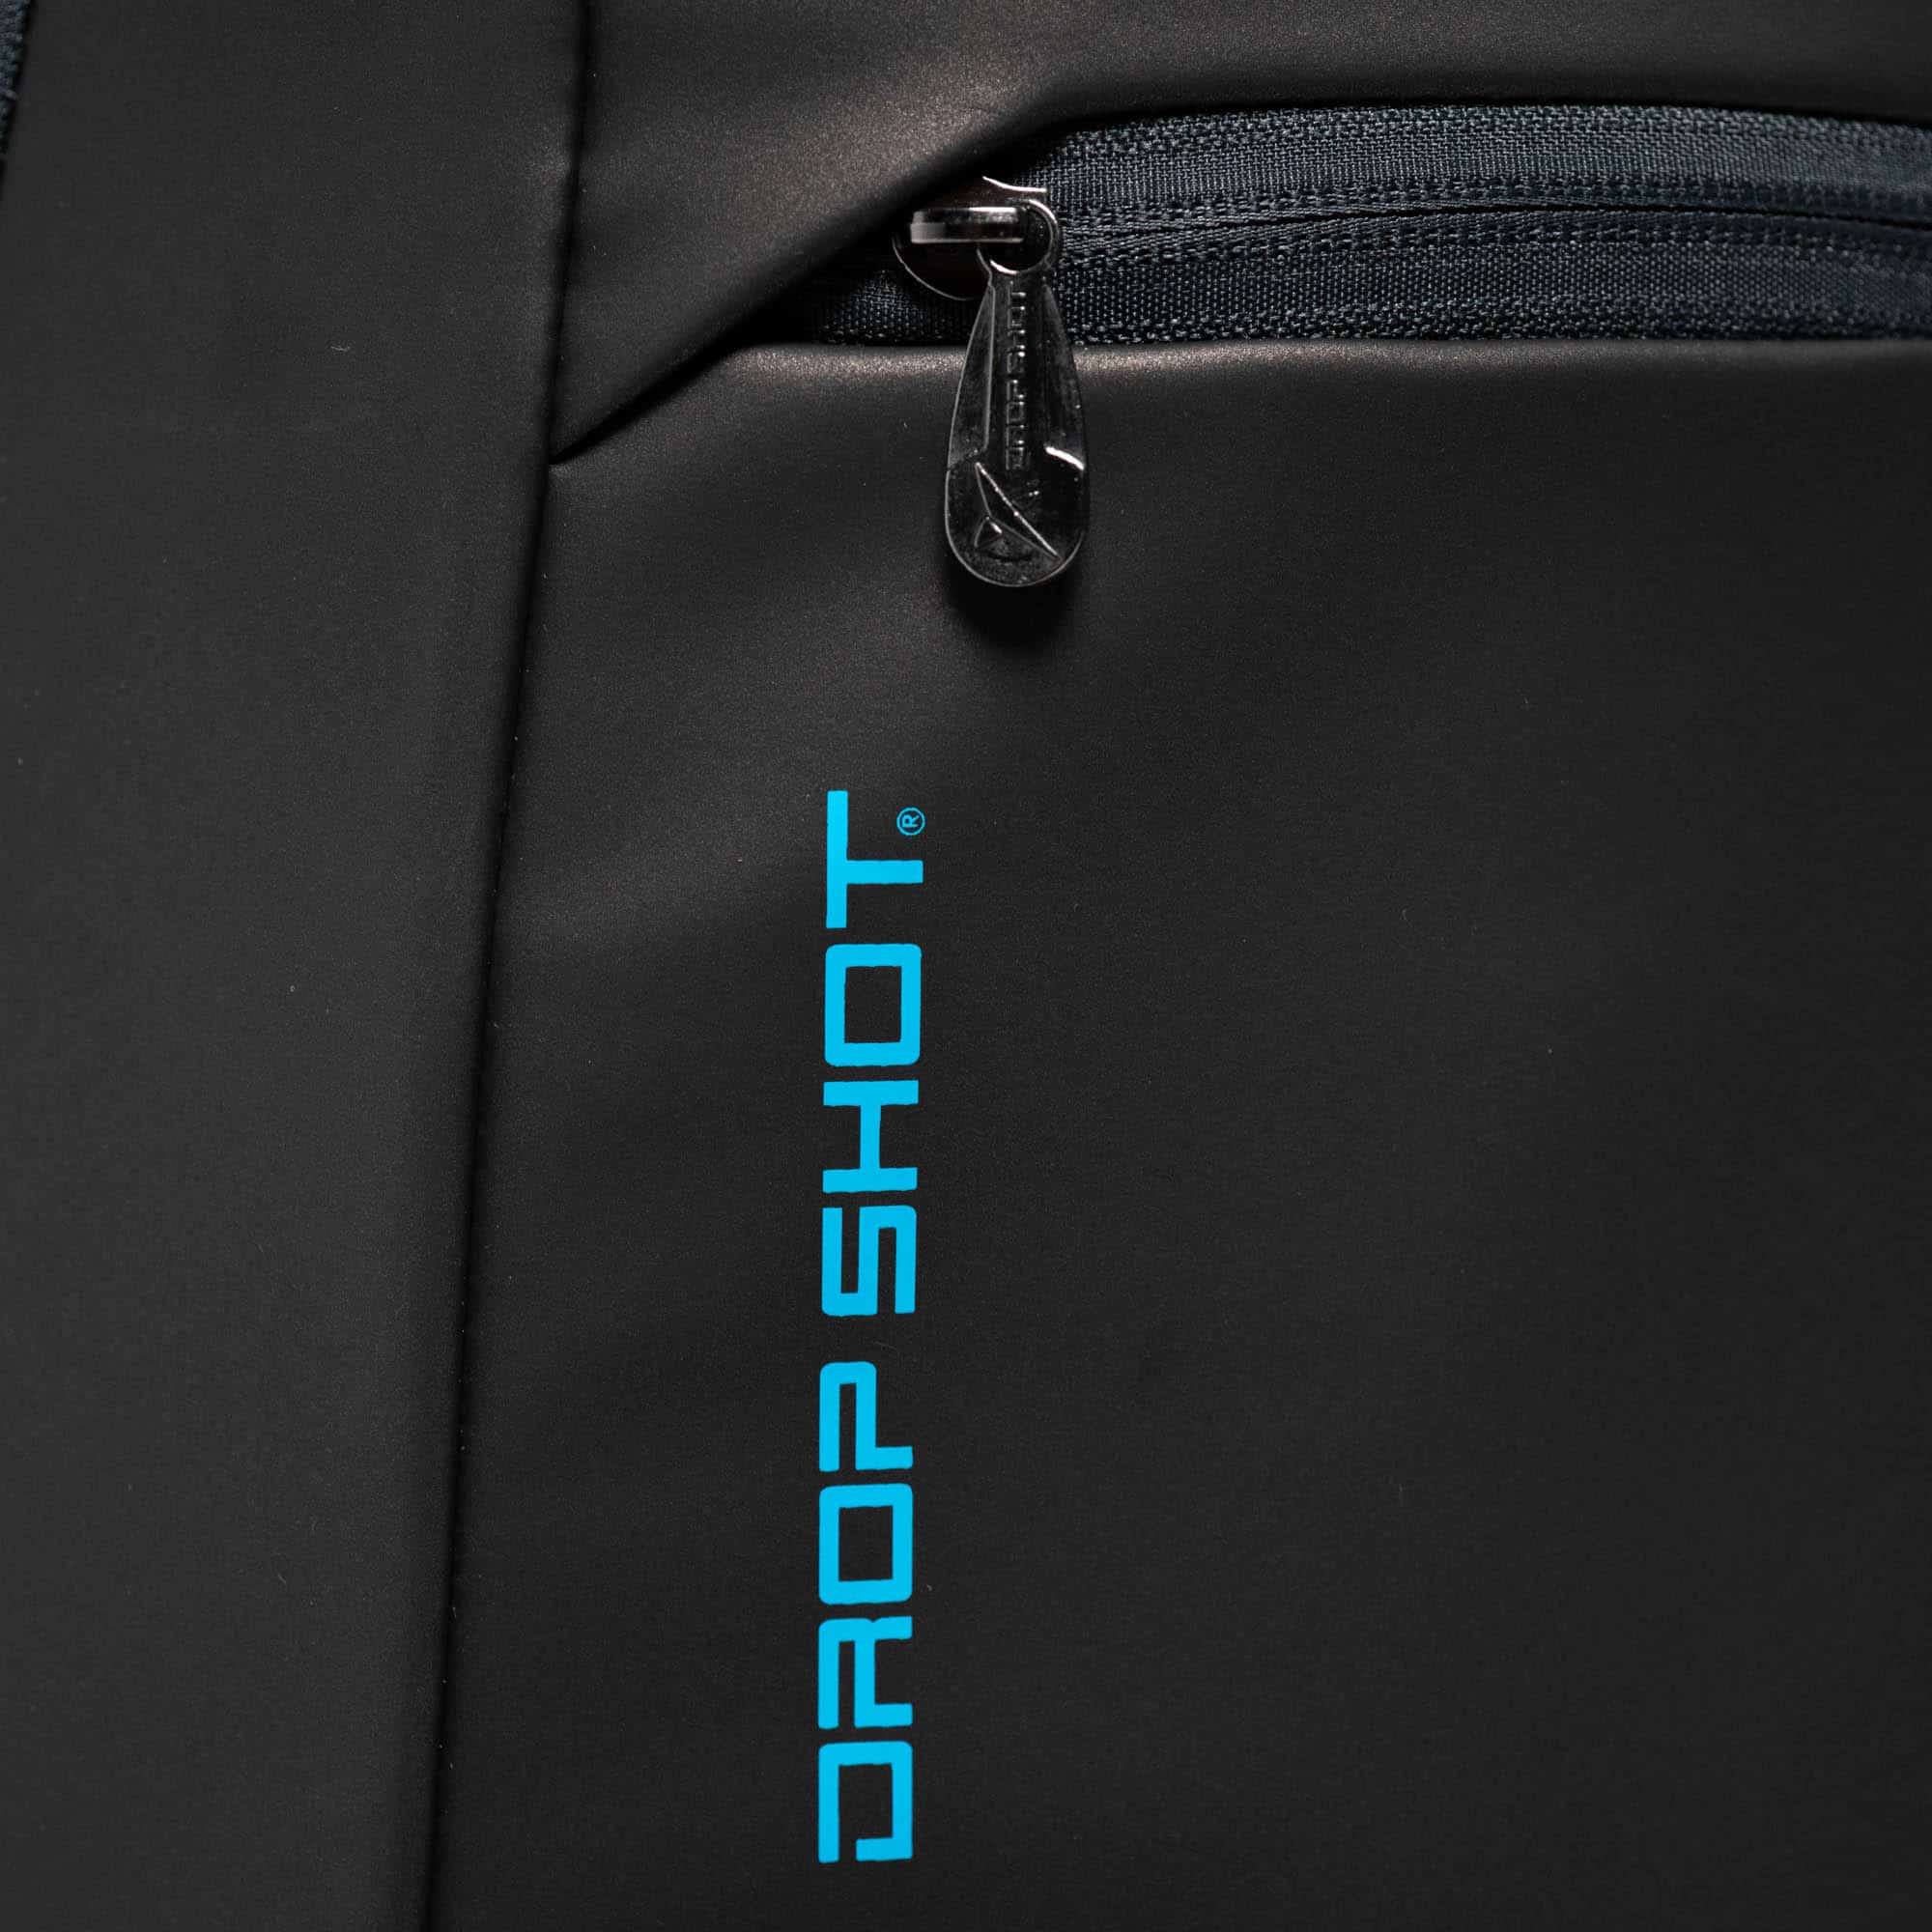 drop shot padel backpack be unique black